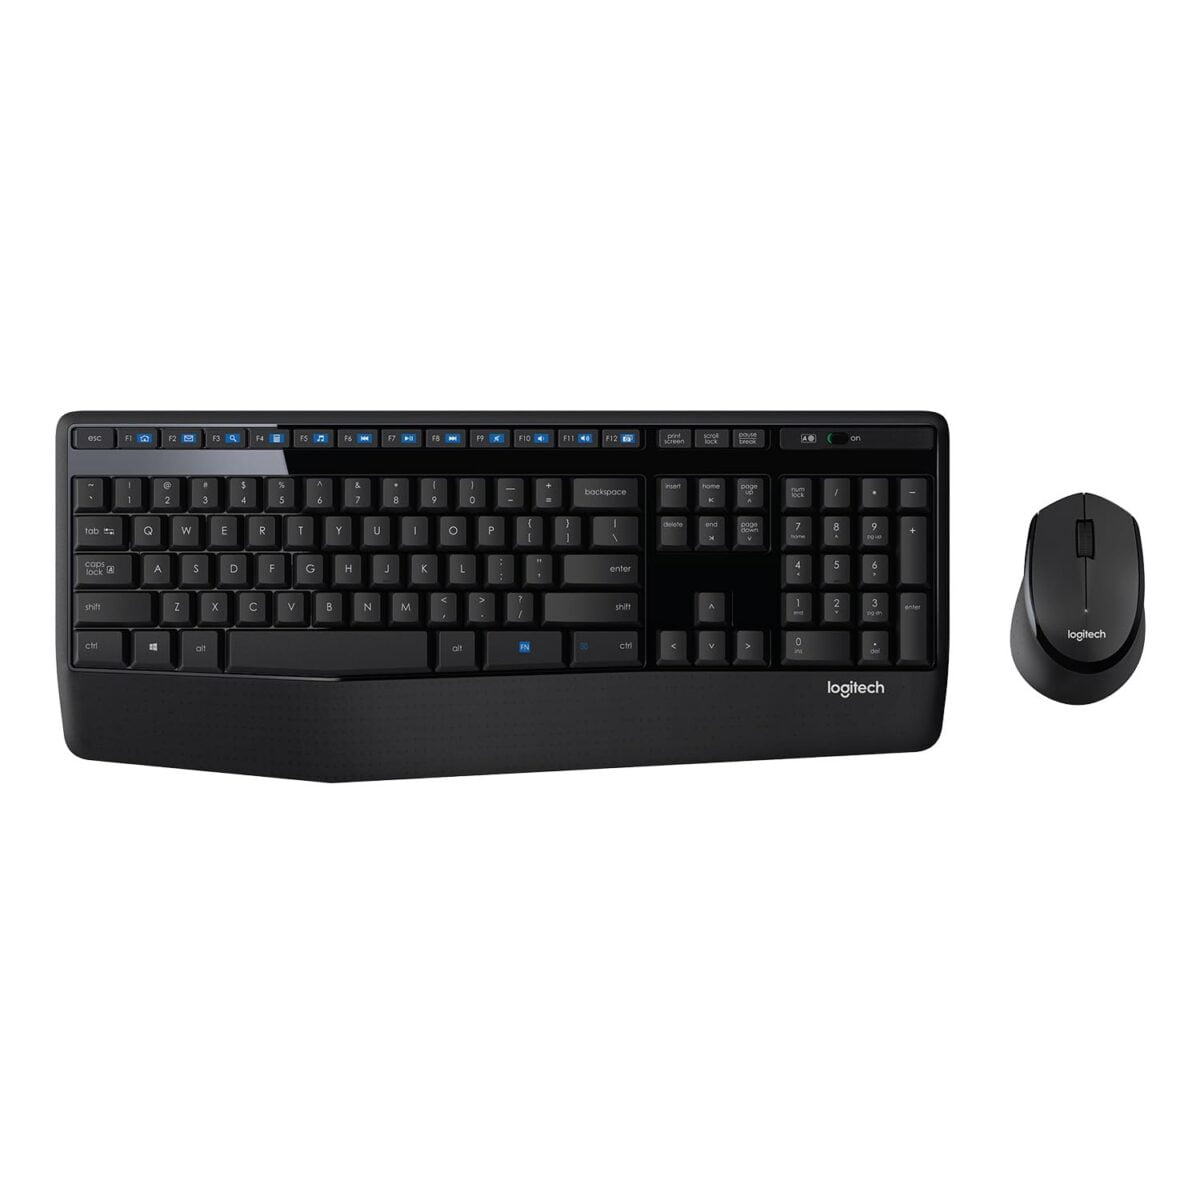 Logitech mk345 wireless keyboard and mouse set